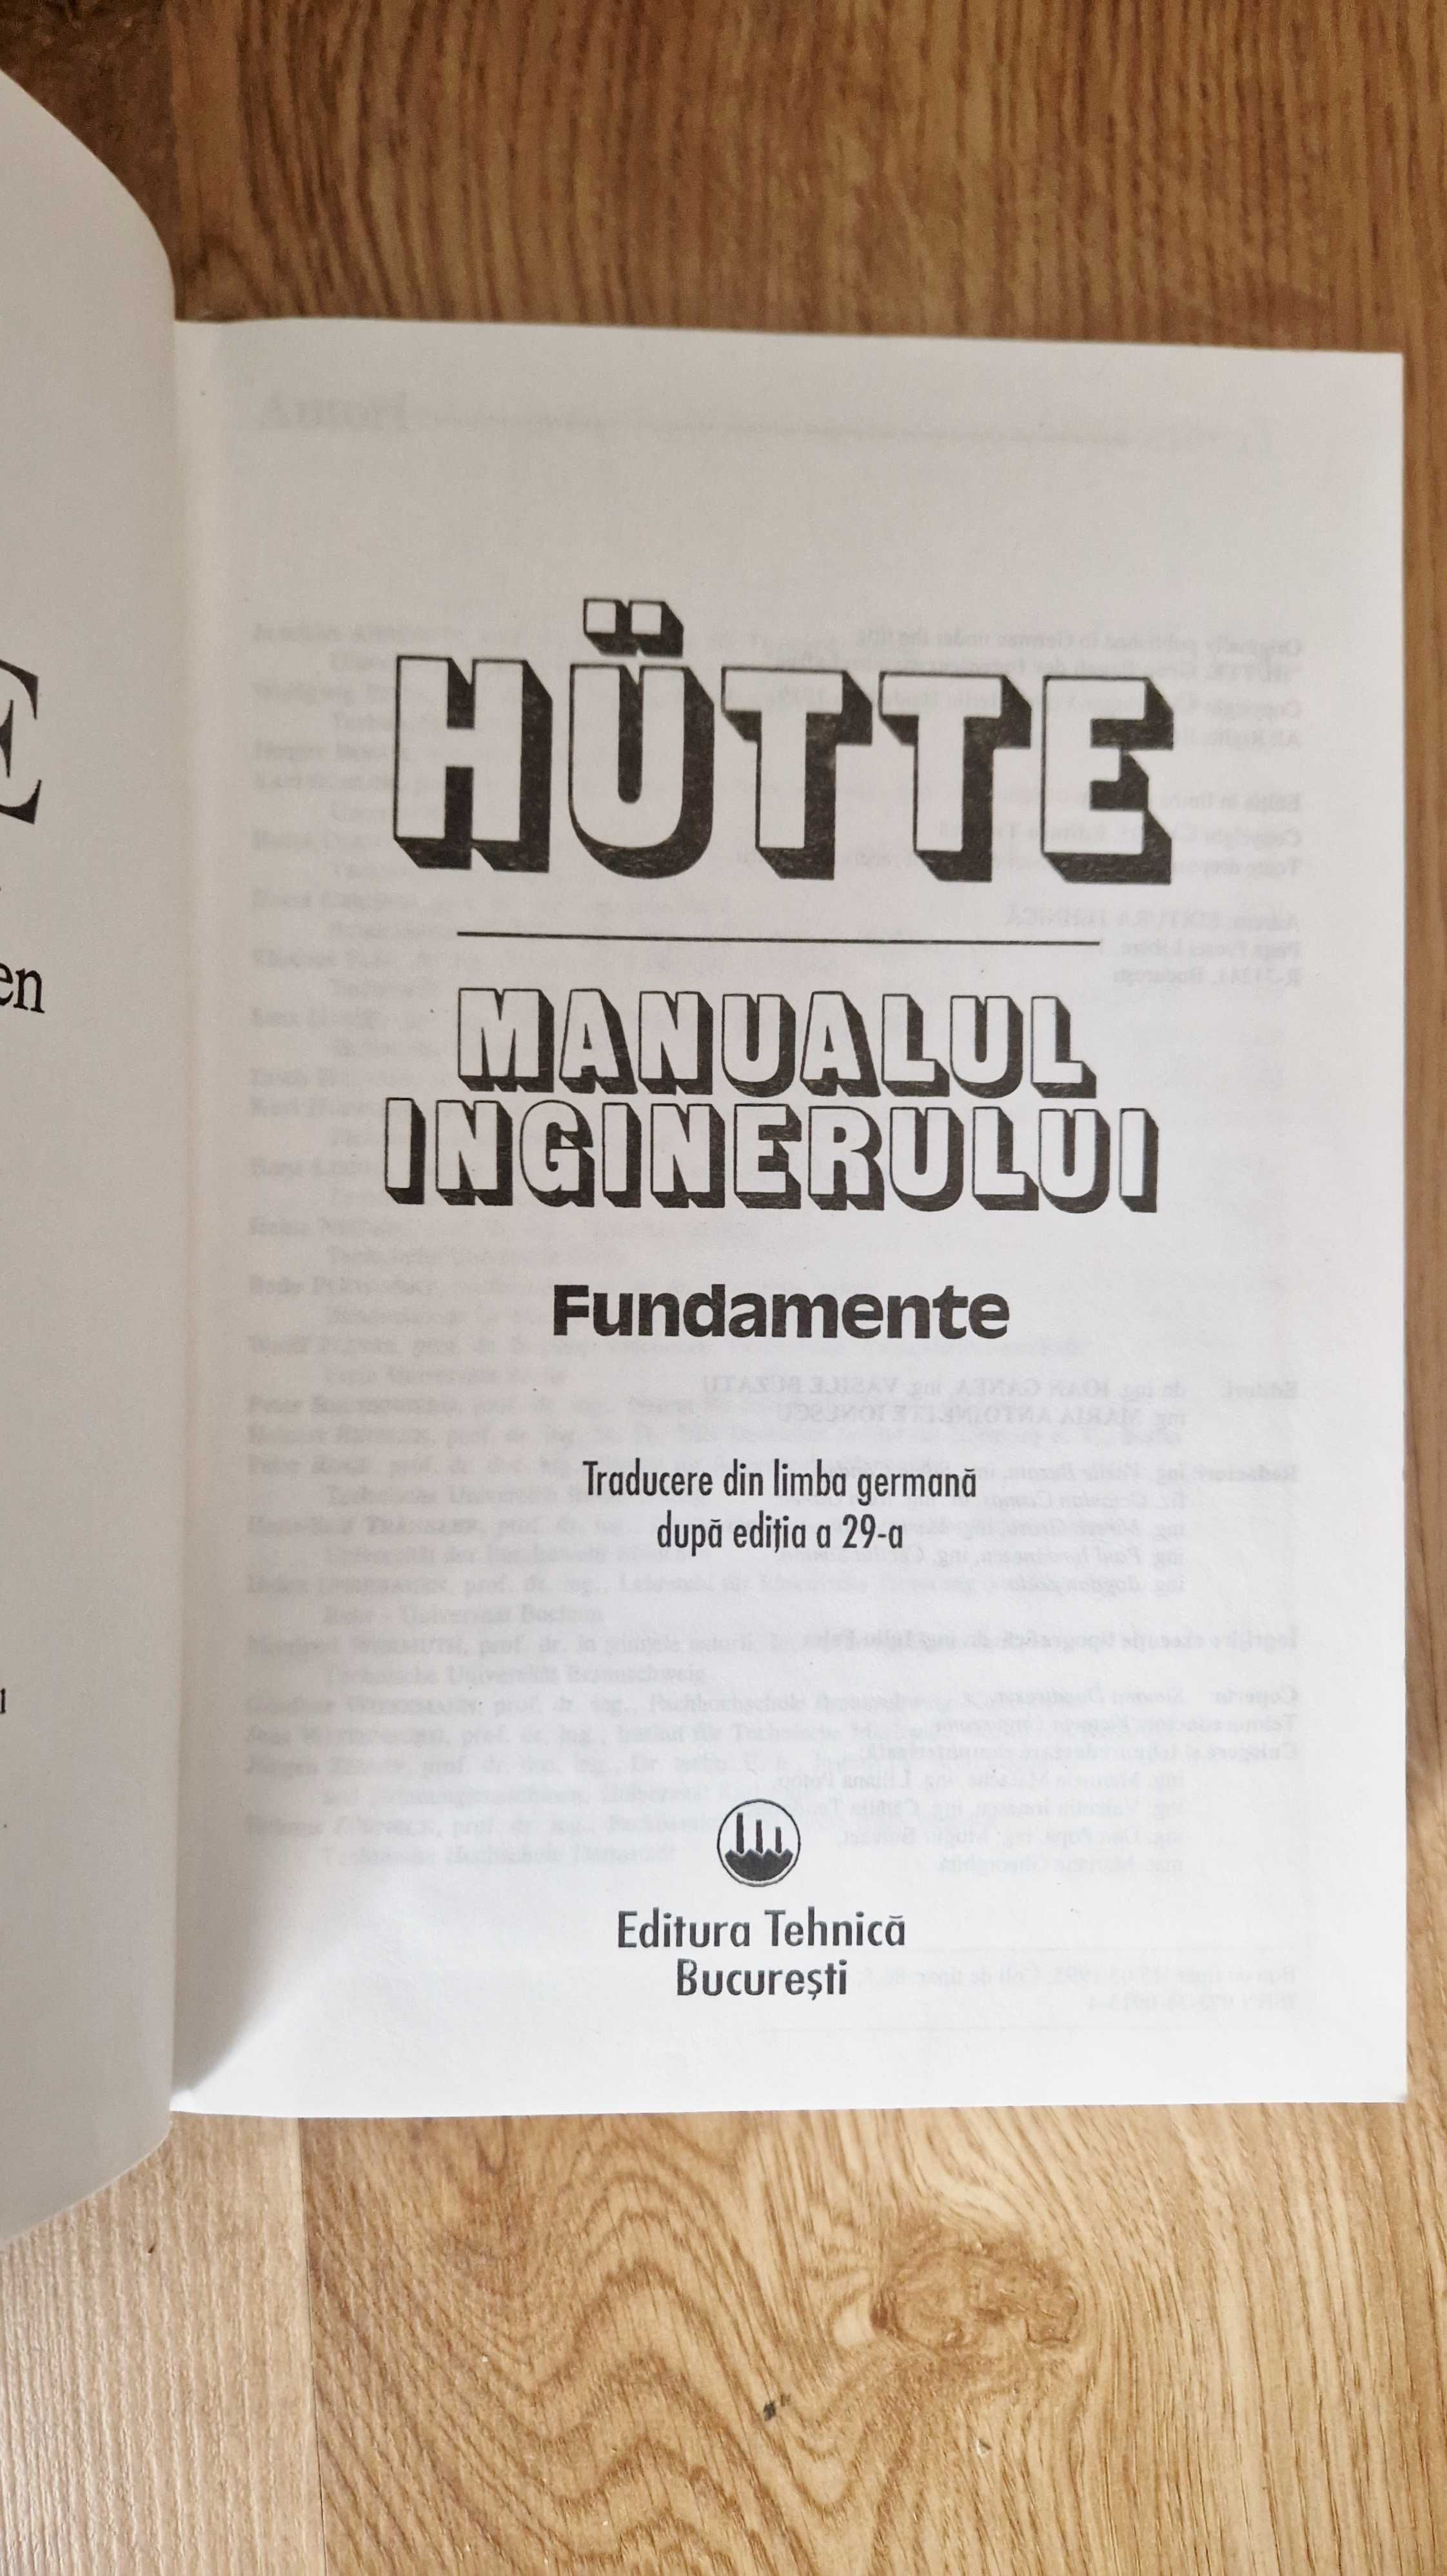 HUTTE MANUALUL INGINERULUI - Fundamente (ed. Tehnica)